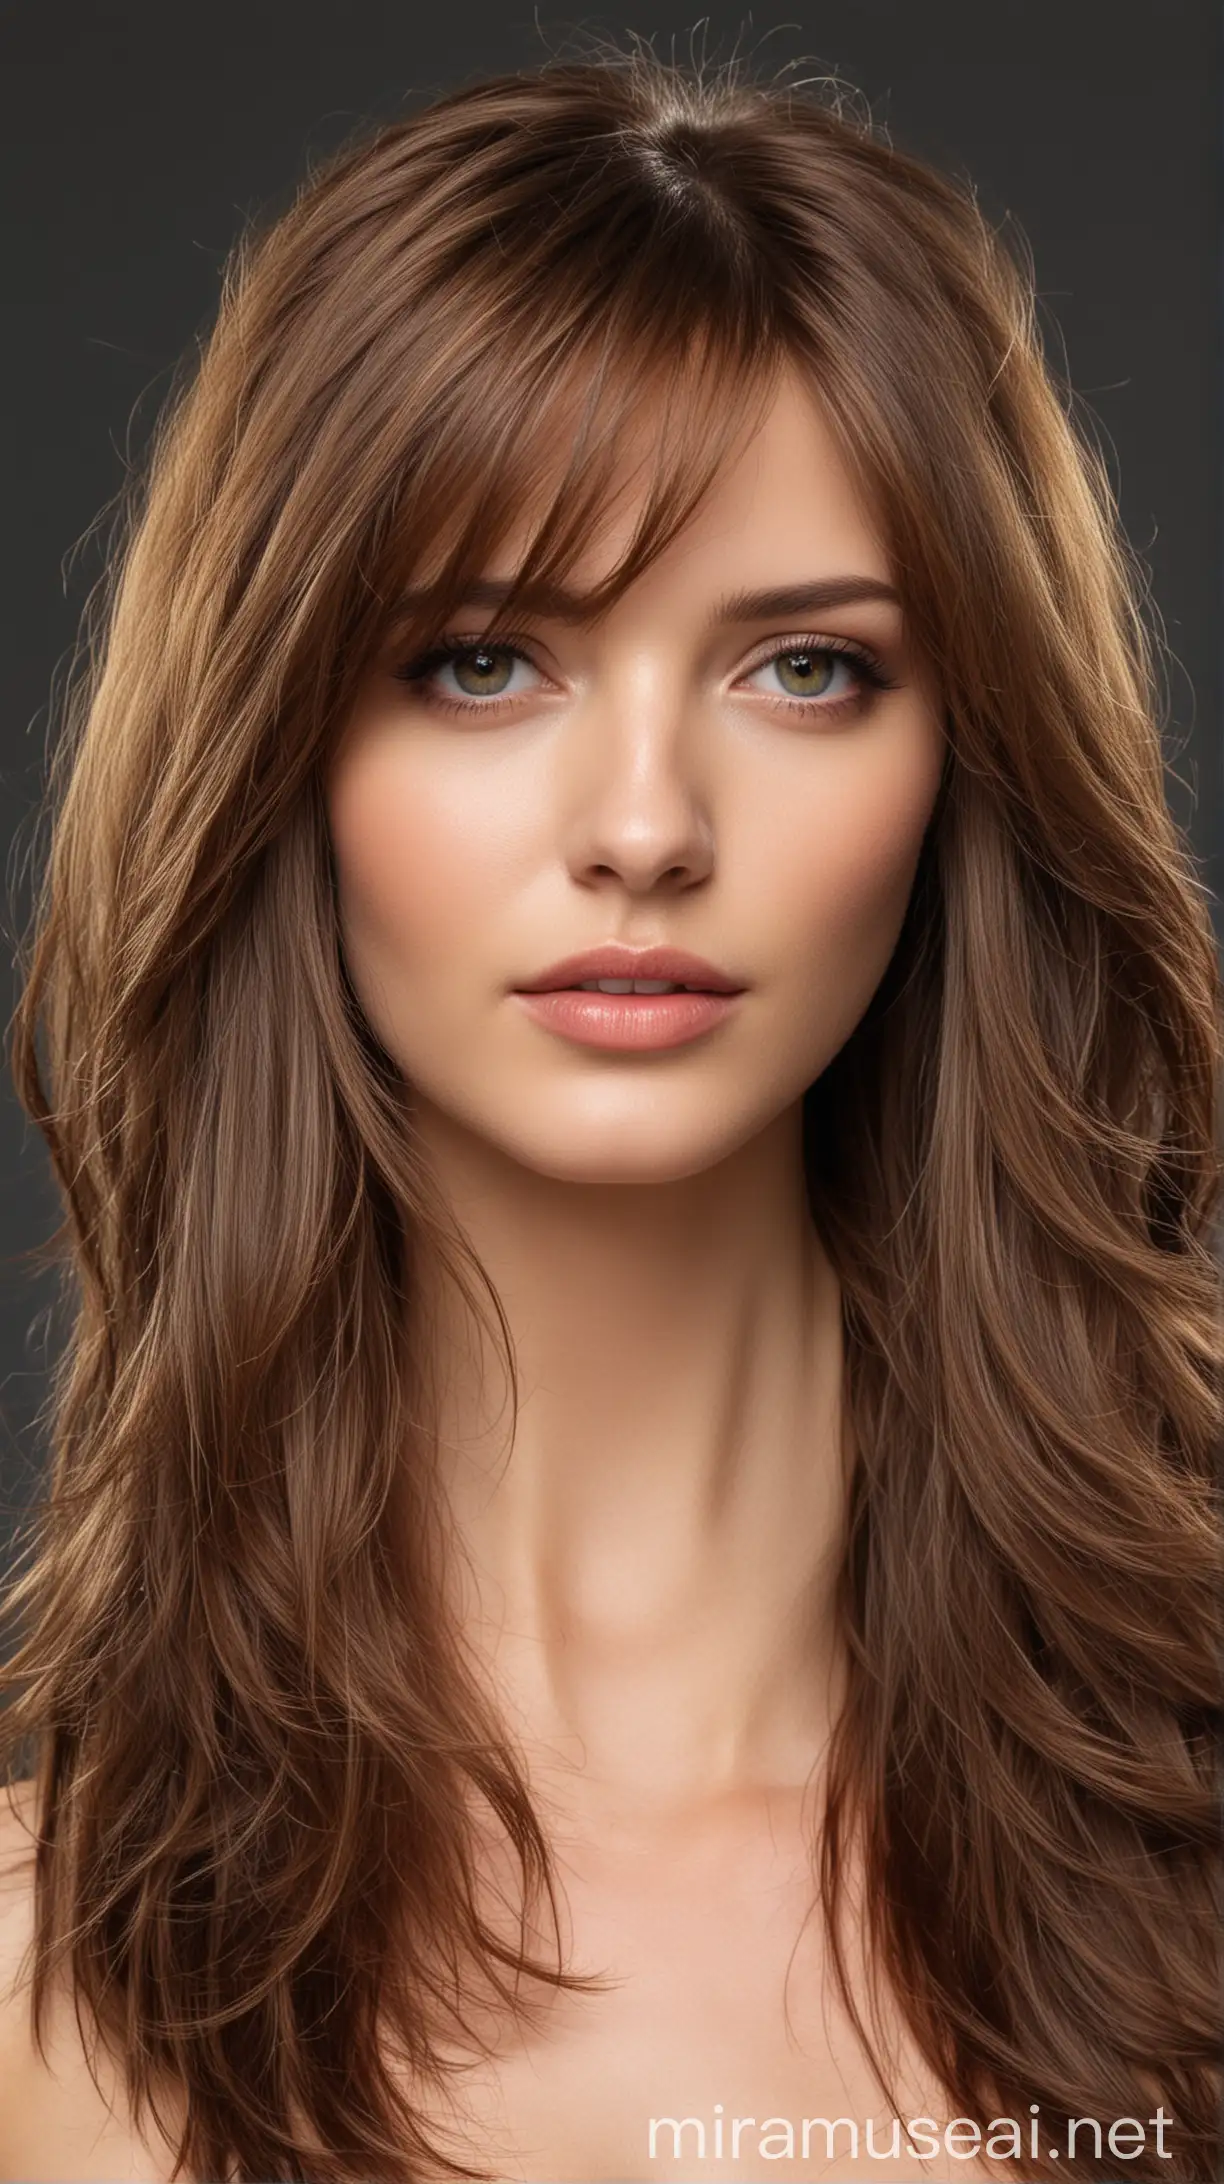 Stylish Long Layers Haircut on a Beautiful Model